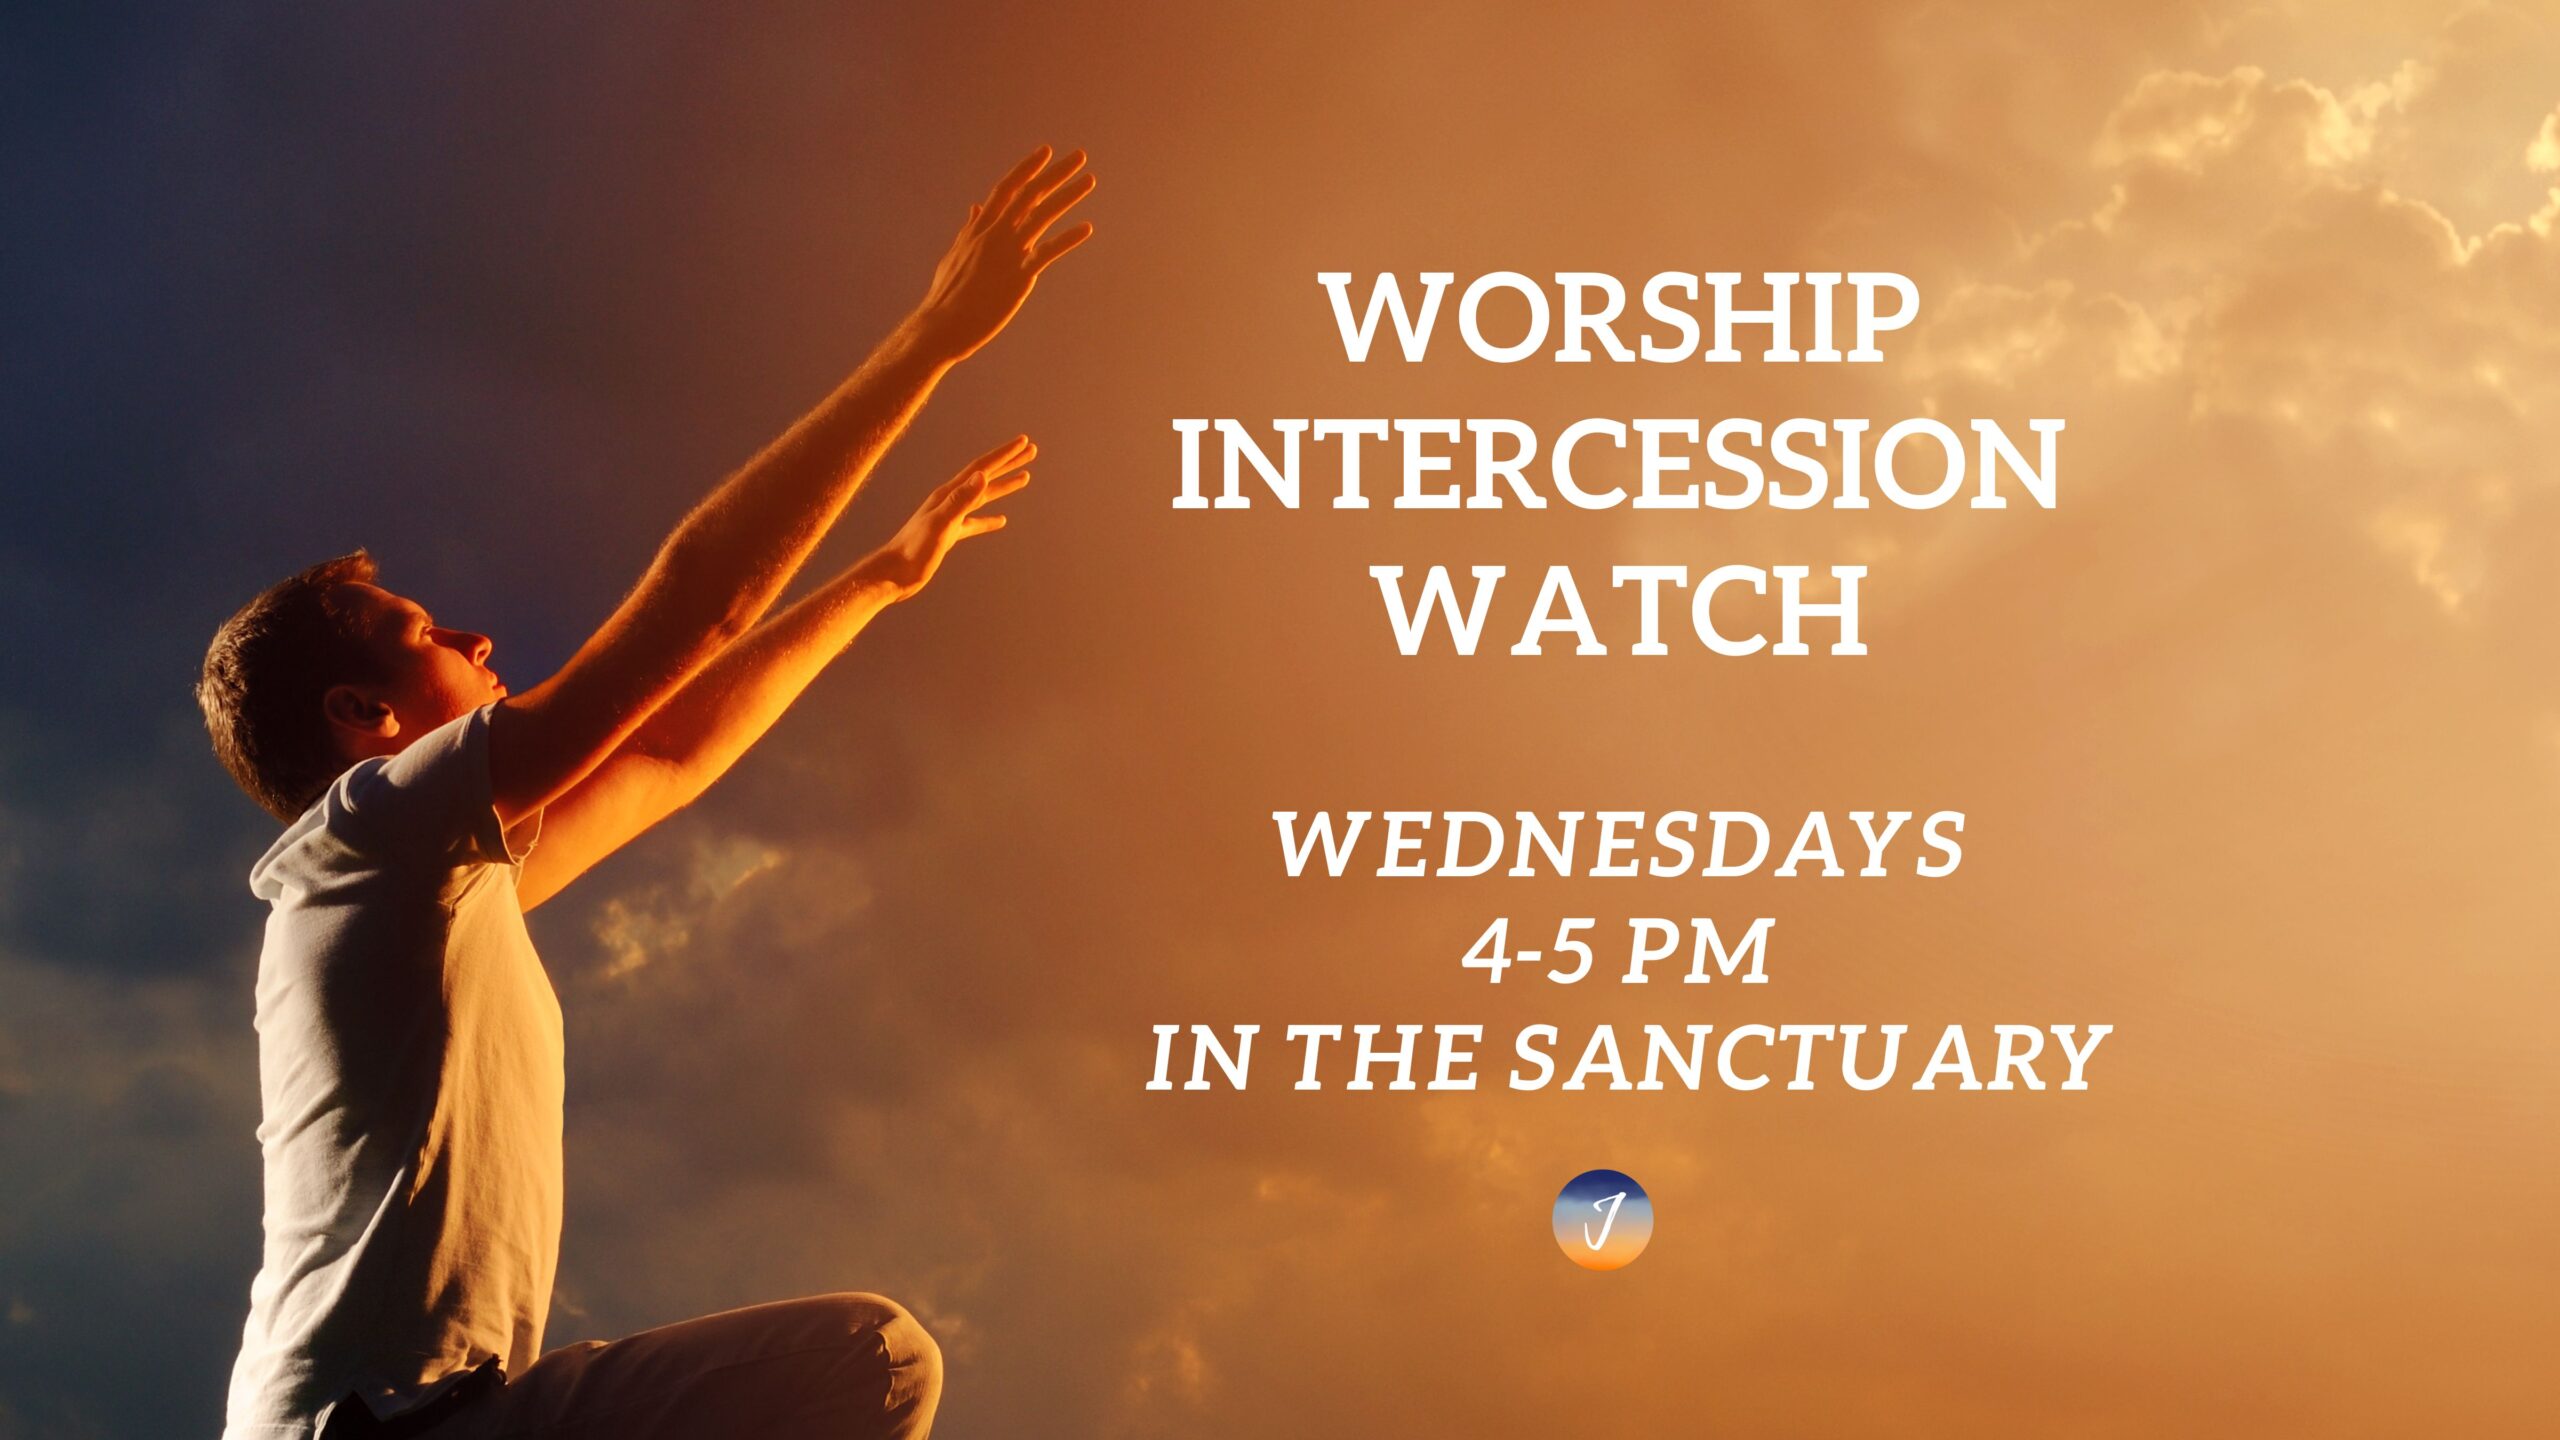 Worship Intercession Watch